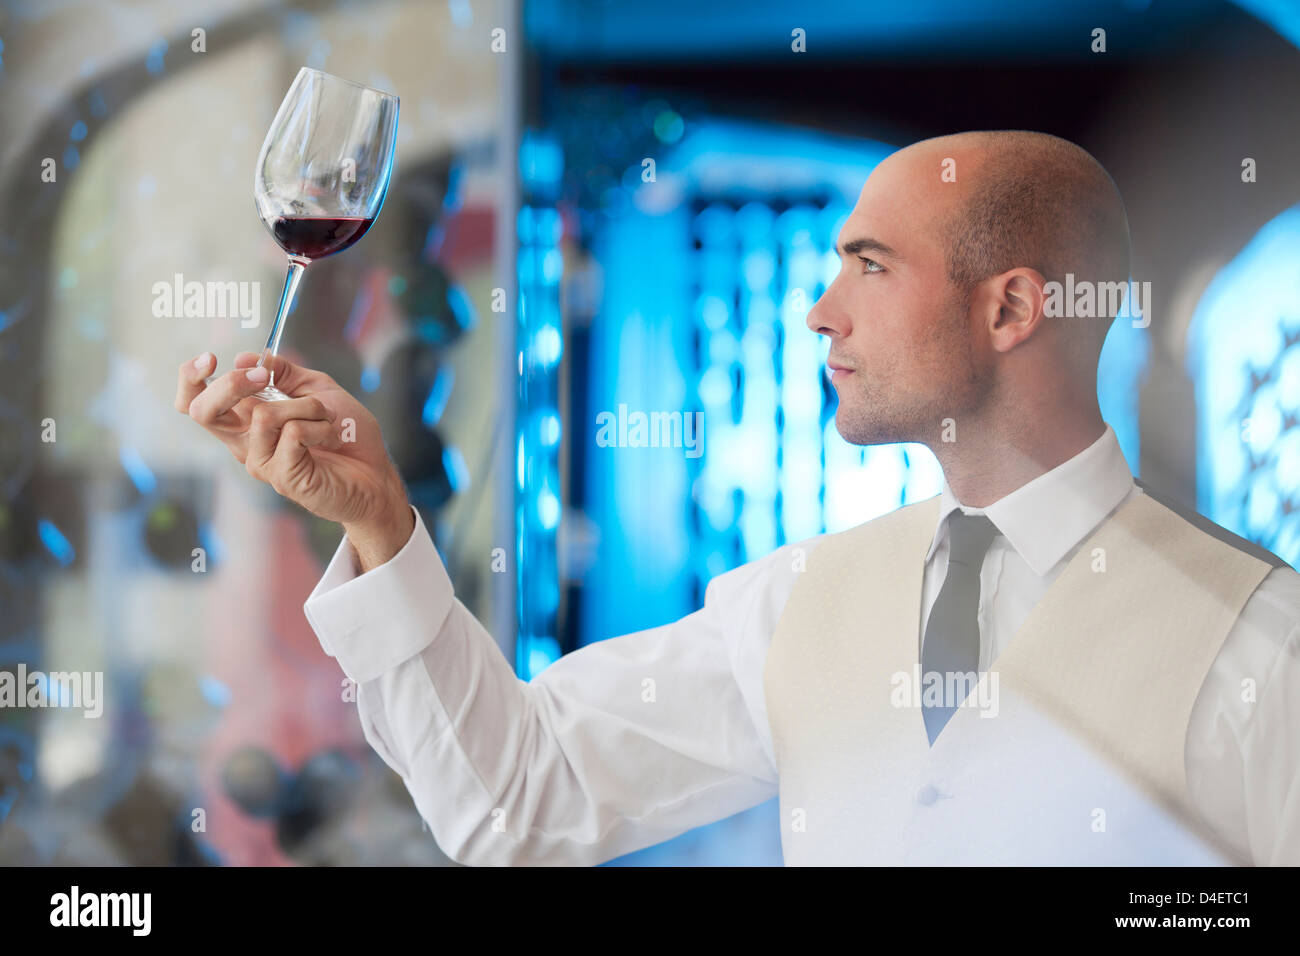 Waiter examining glass of wine in restaurant Stock Photo